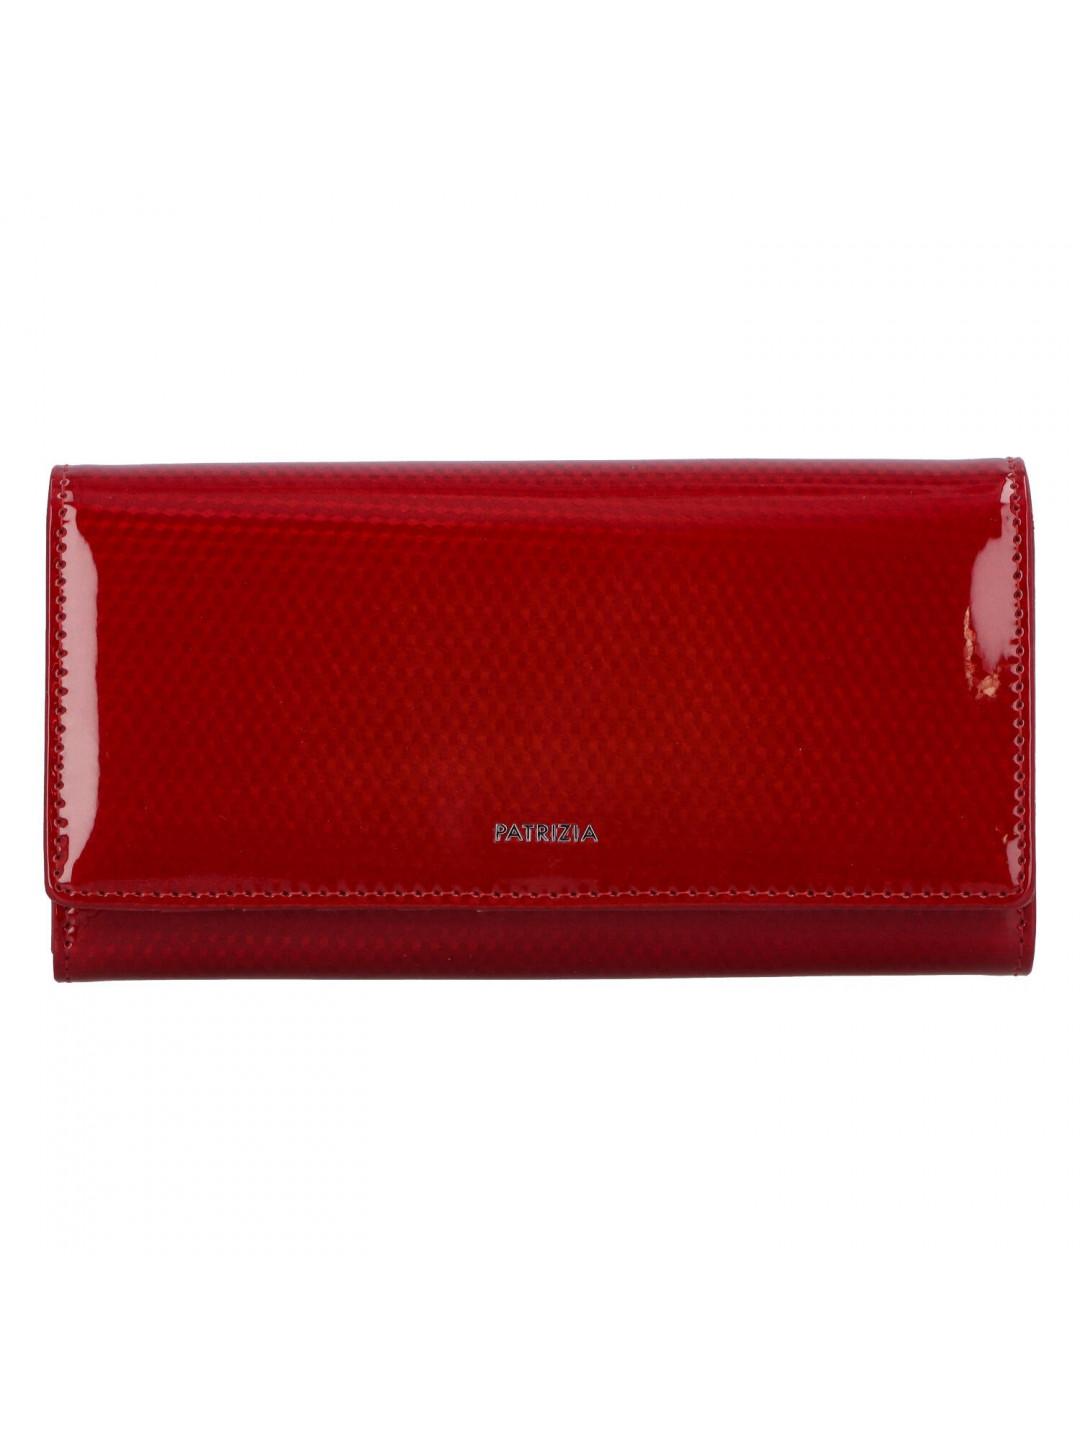 Luxusní větší dámská kožená peněženka Samantha laková červená